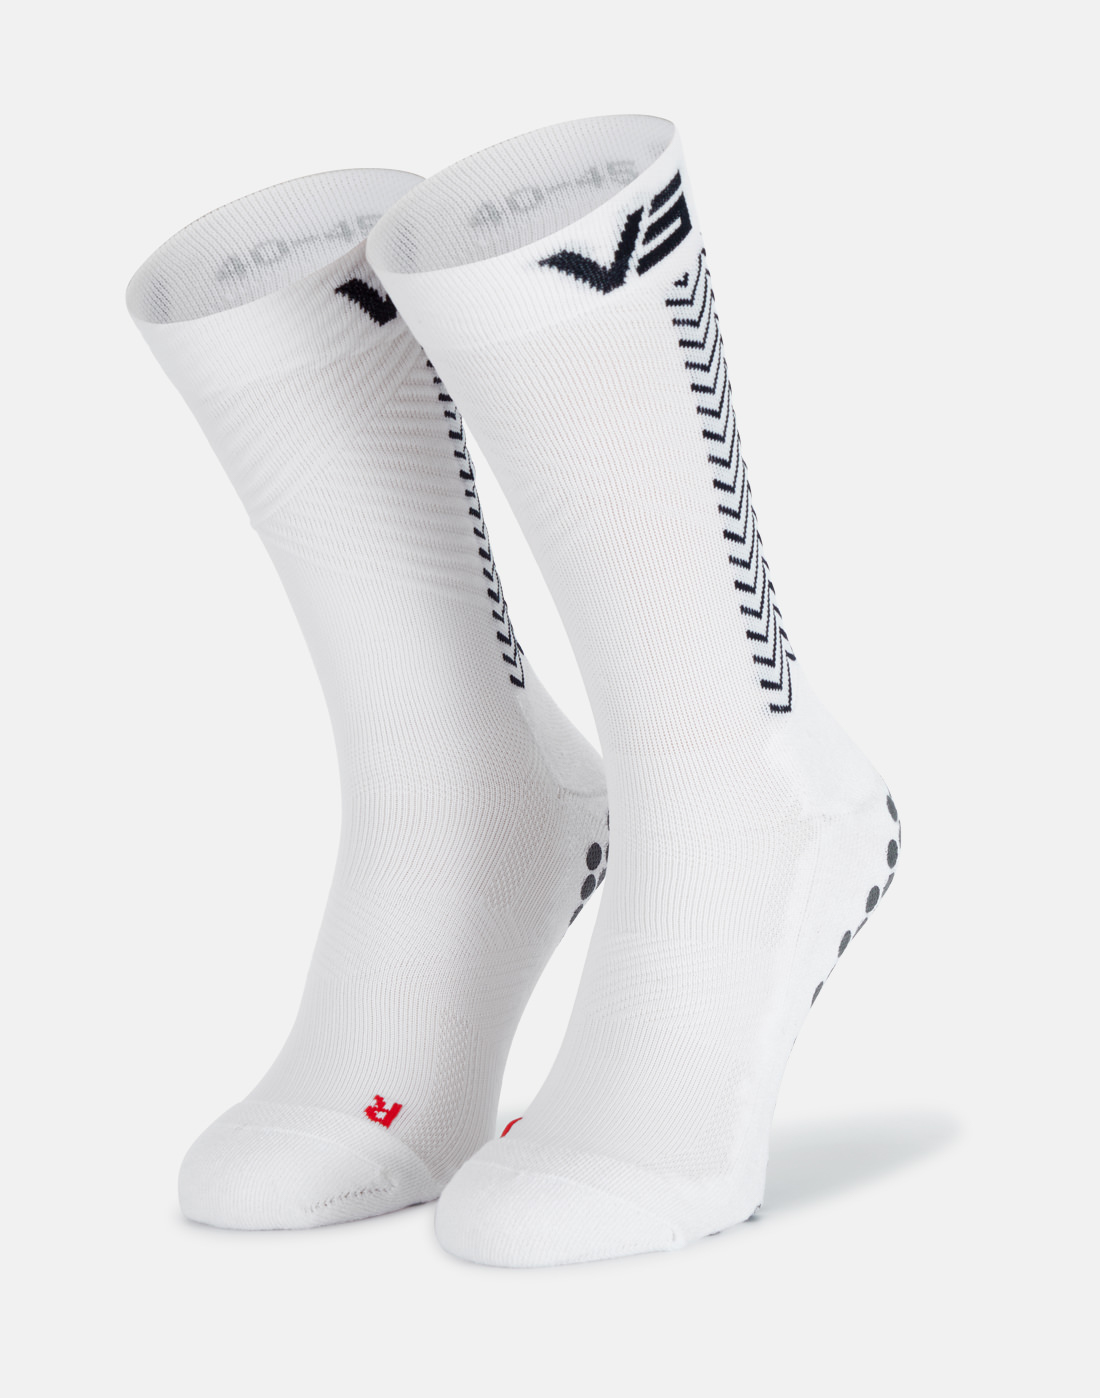 VYPR5 Suregrip Lite Grip Socks - White